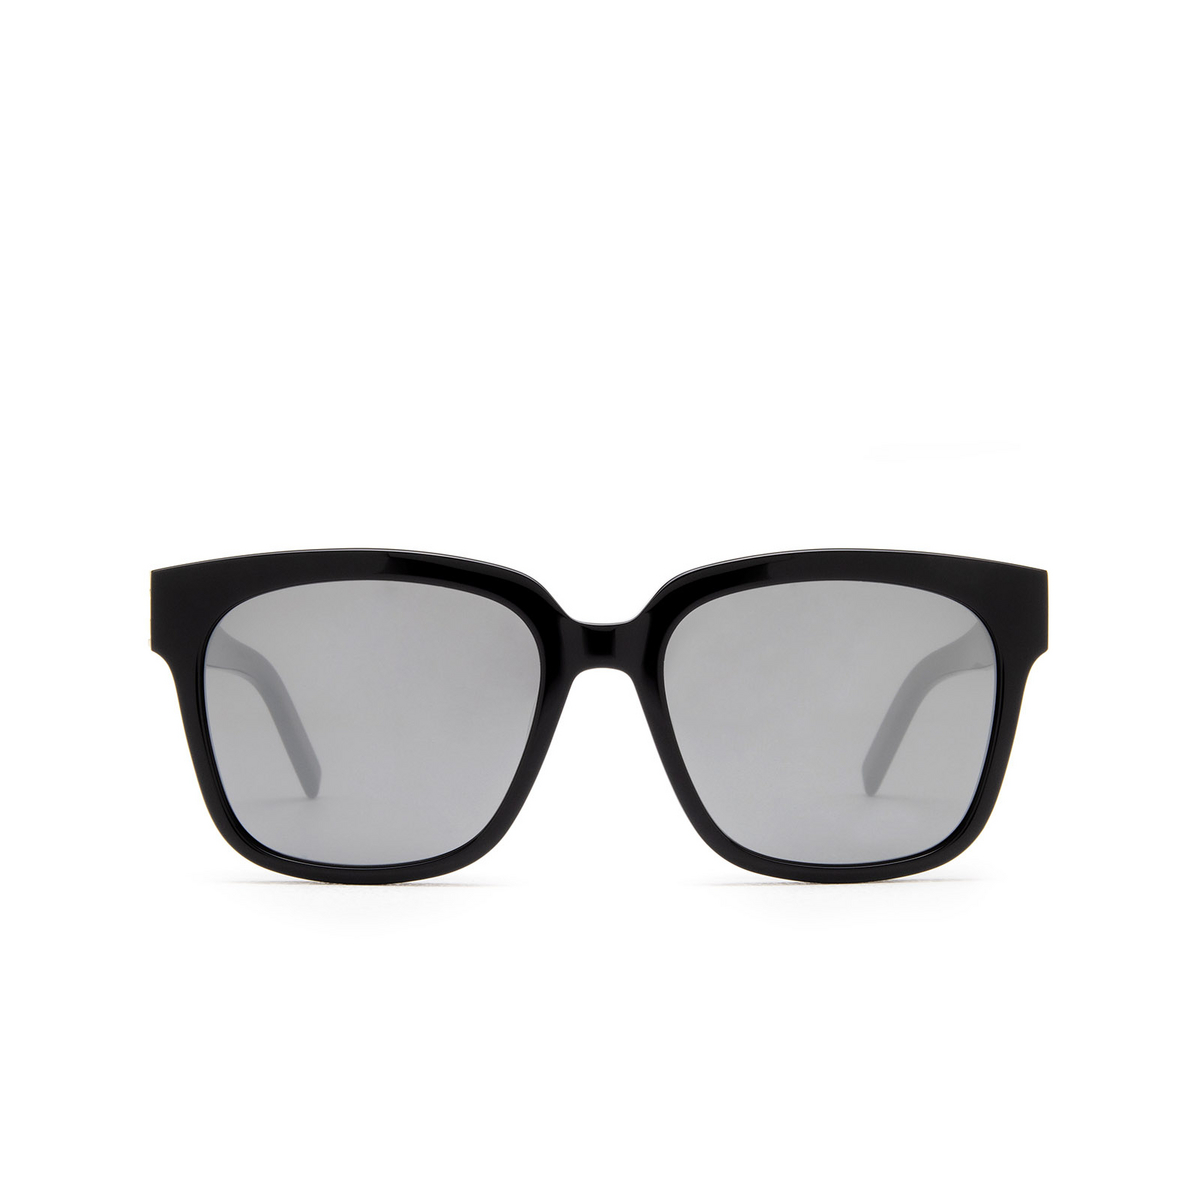 Saint Laurent SL M40 Sunglasses 002 Black - front view